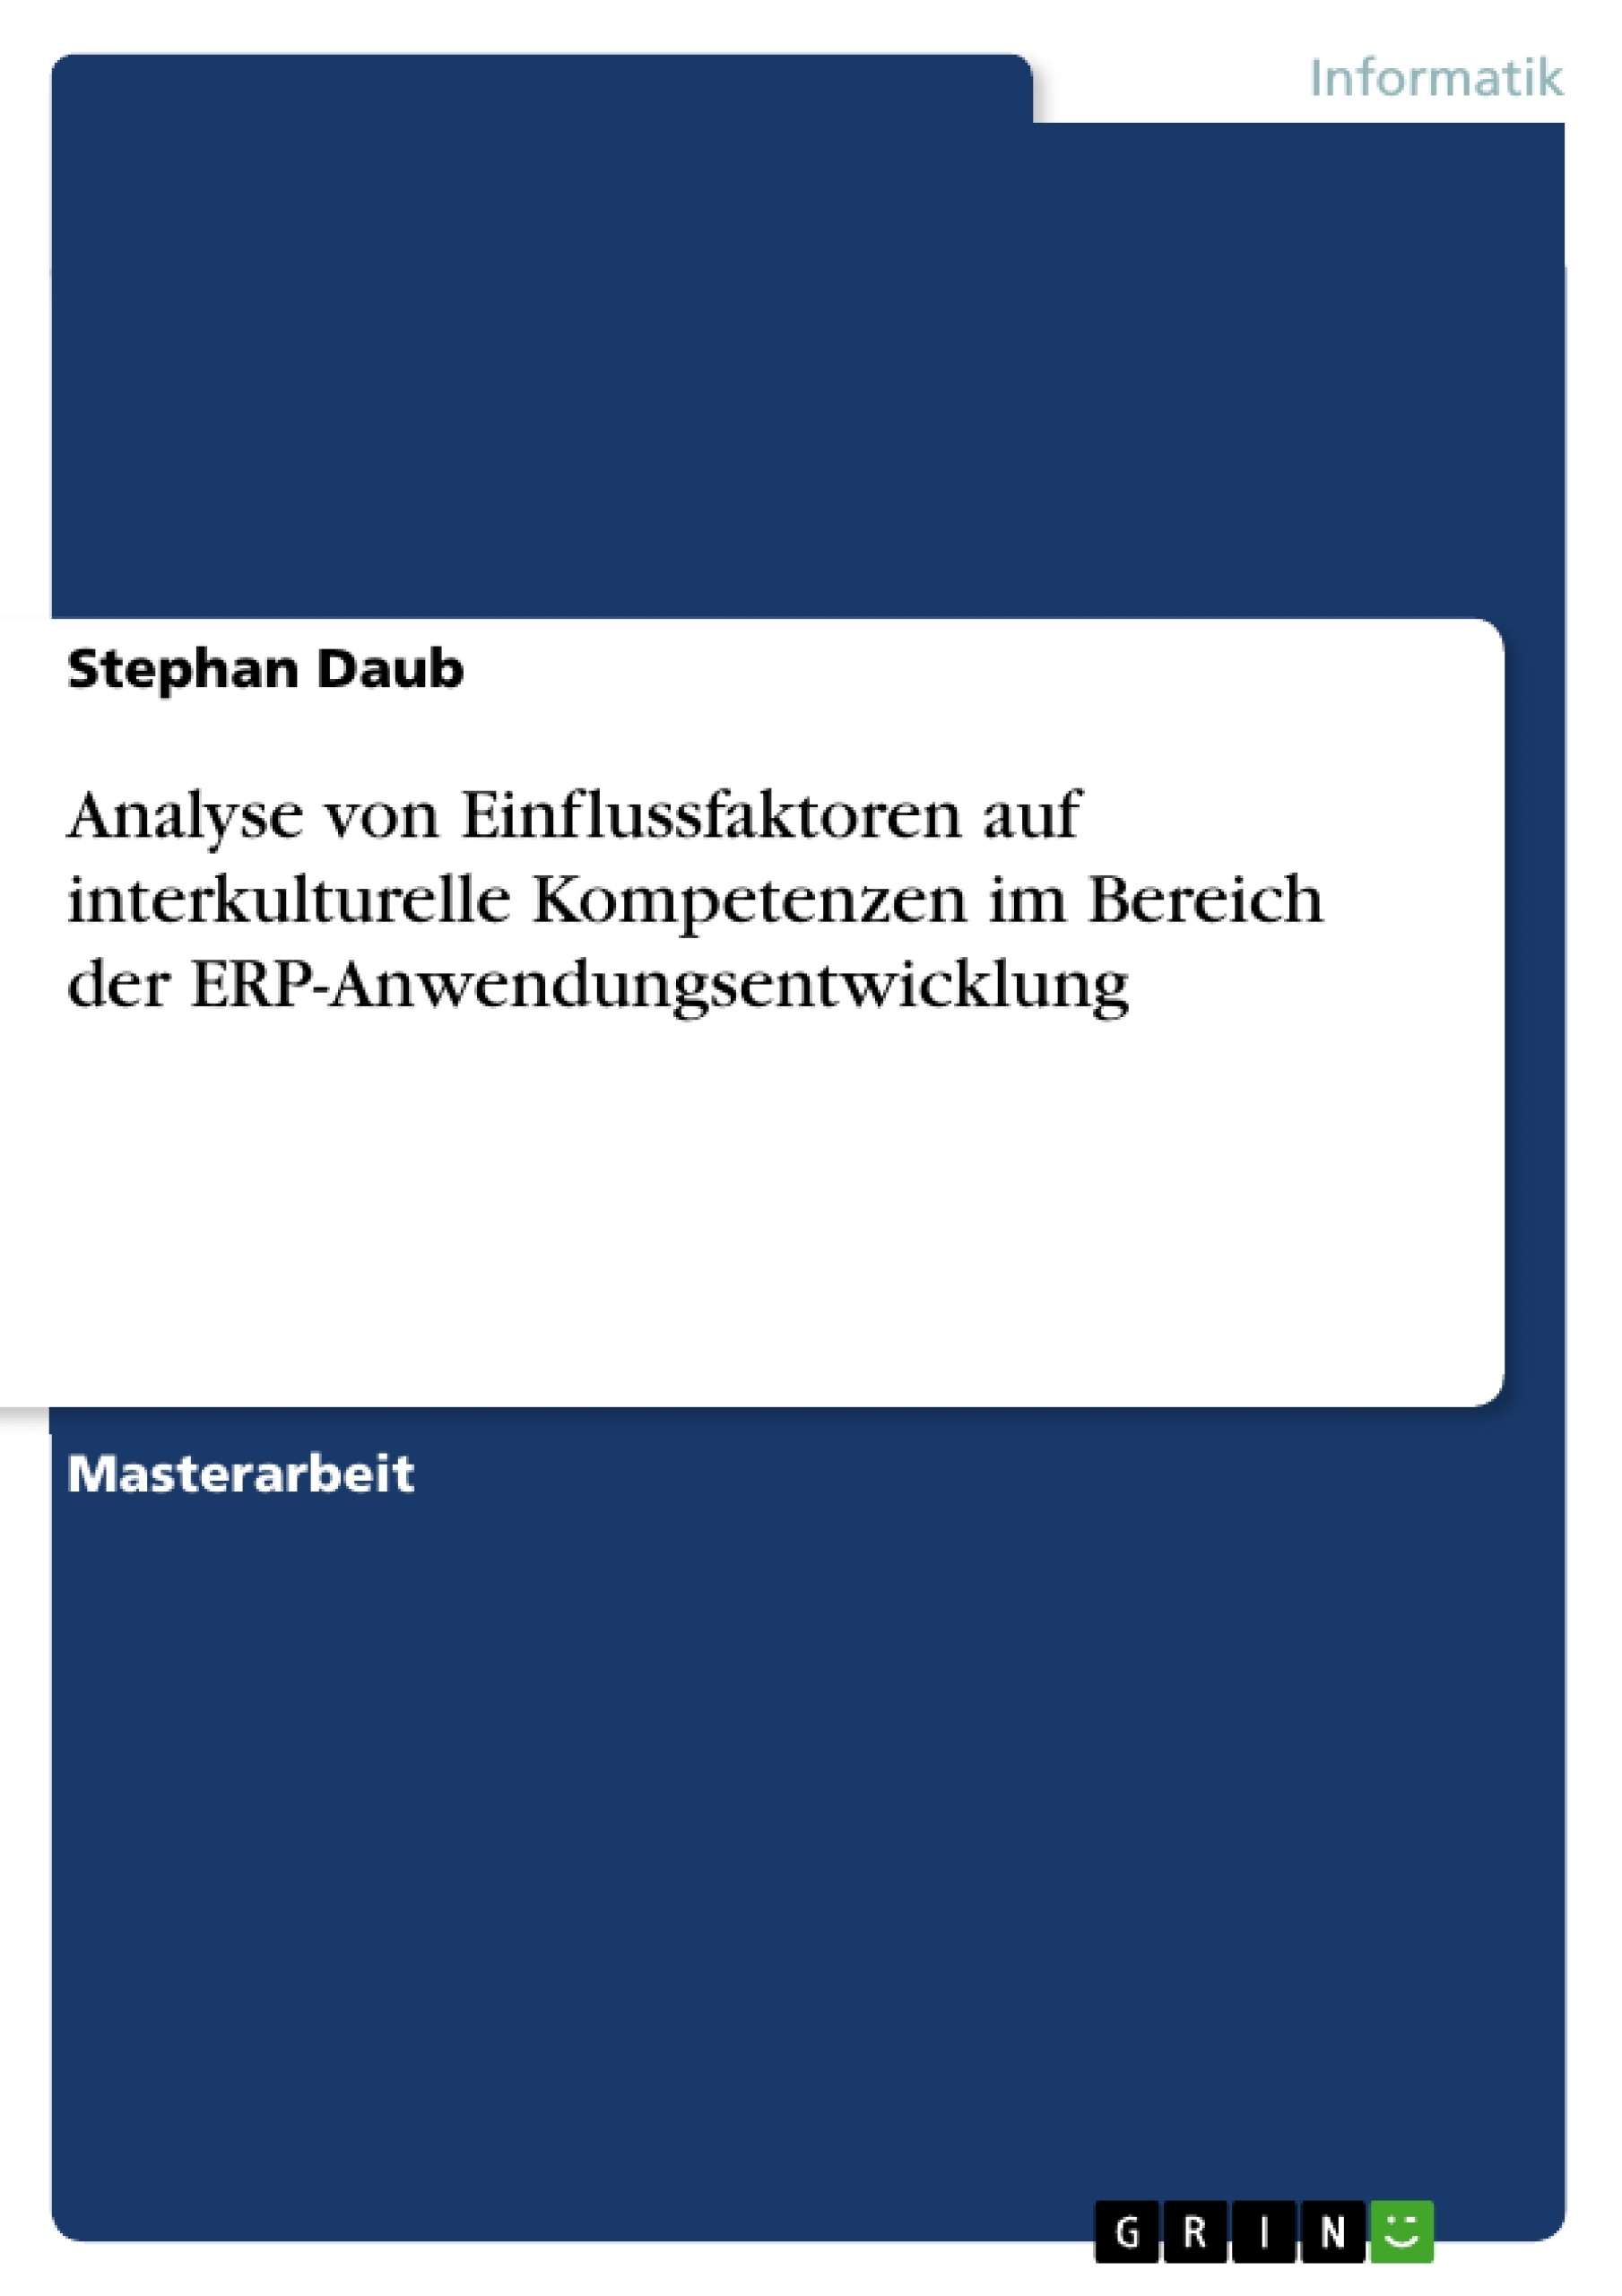 Title: Analyse von Einflussfaktoren auf interkulturelle Kompetenzen im Bereich der ERP-Anwendungsentwicklung